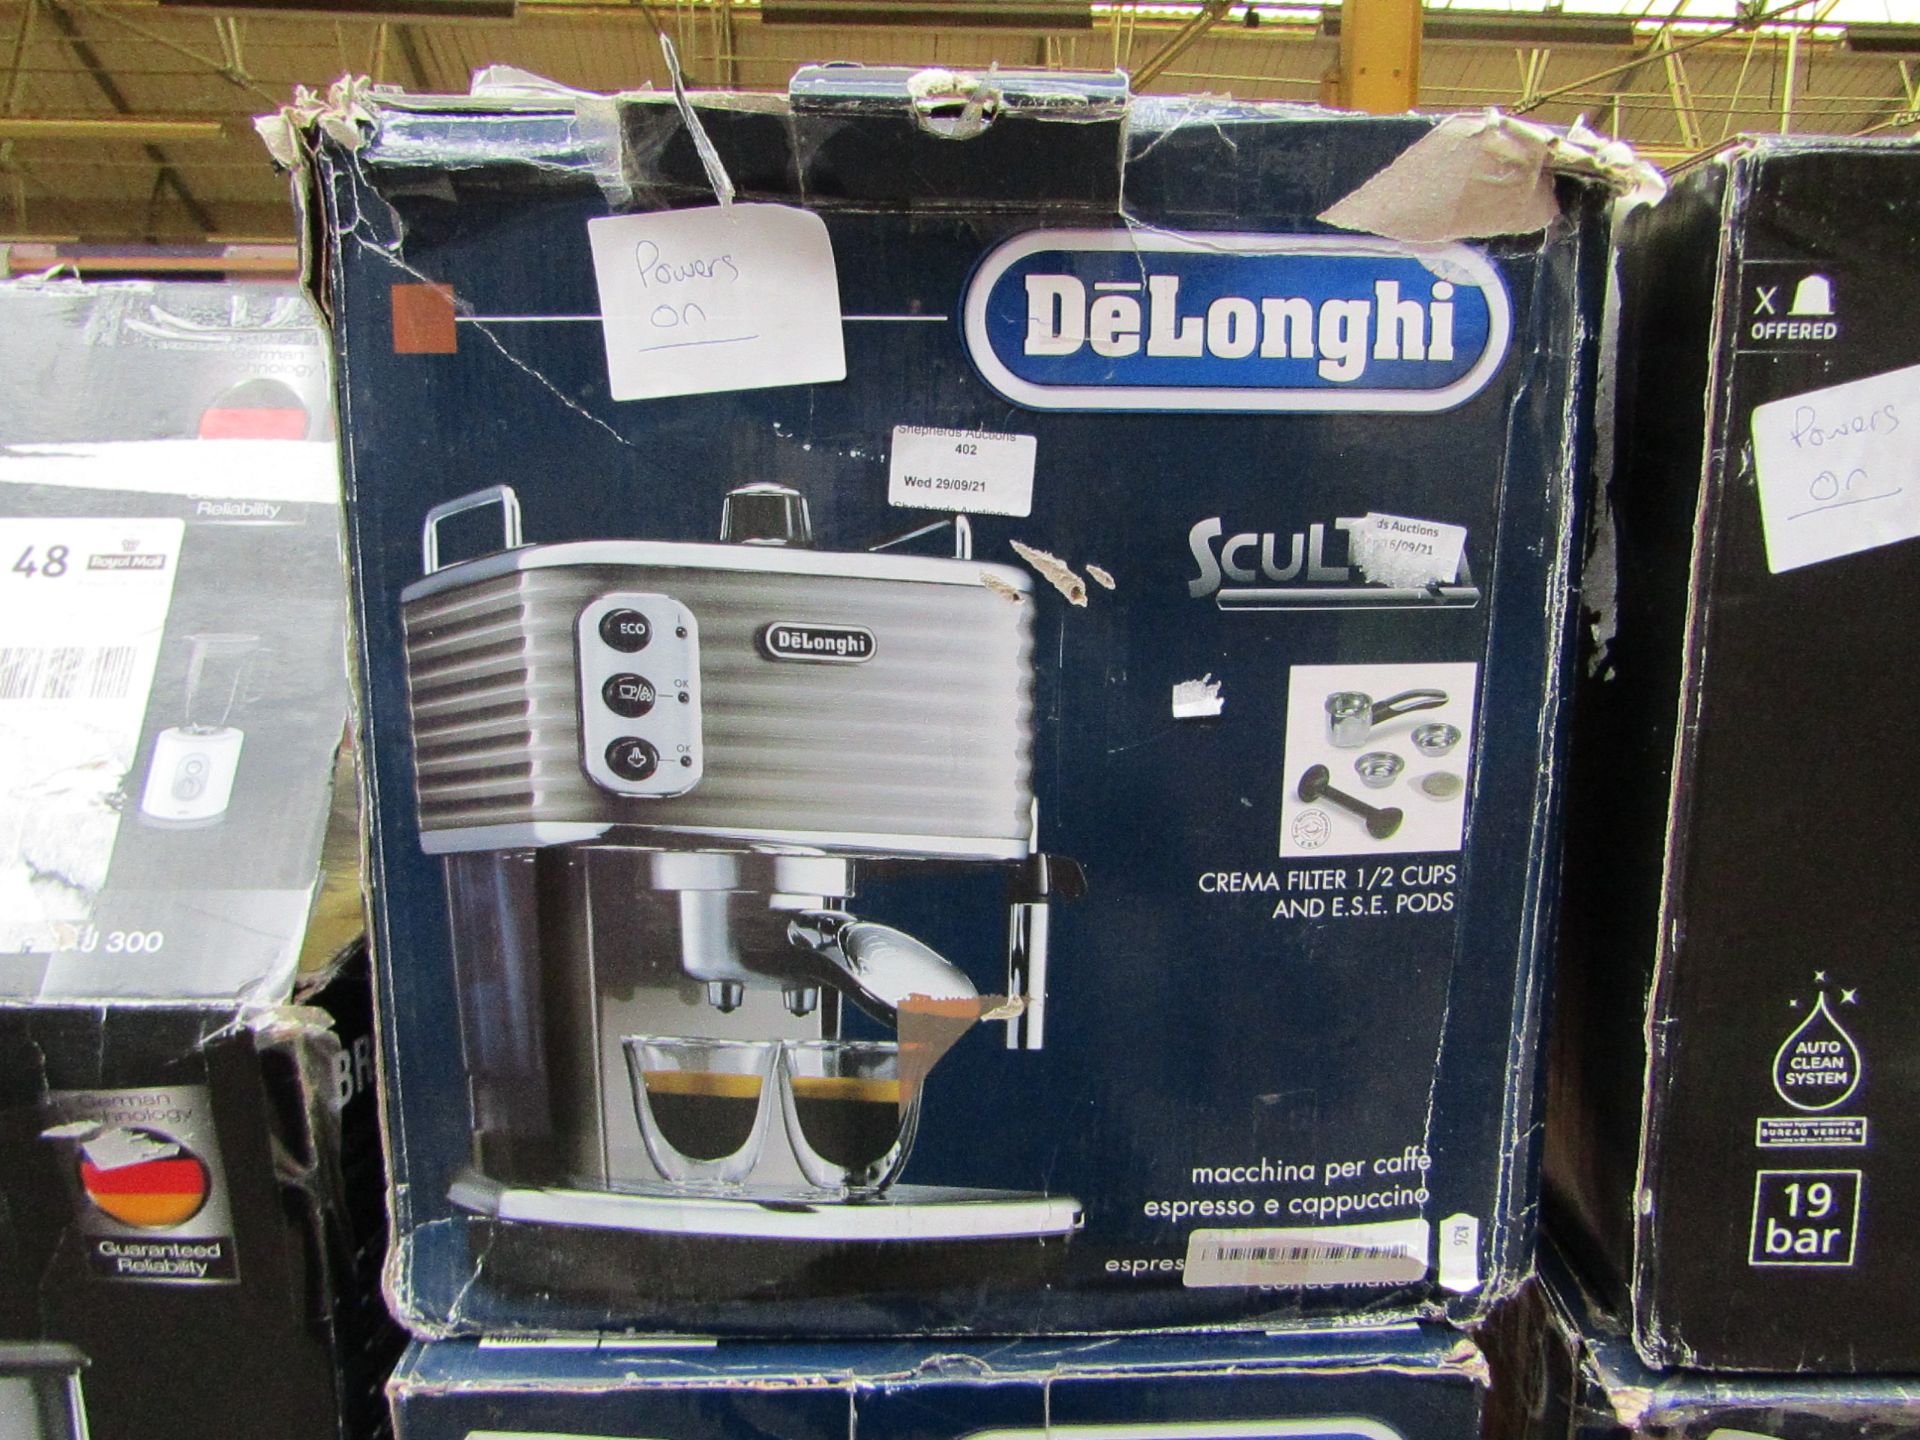 DELONGHI - Scultura Traditional Barista Pump Espresso Machine, Coffee and Cappuccino Maker, ECZ351BG